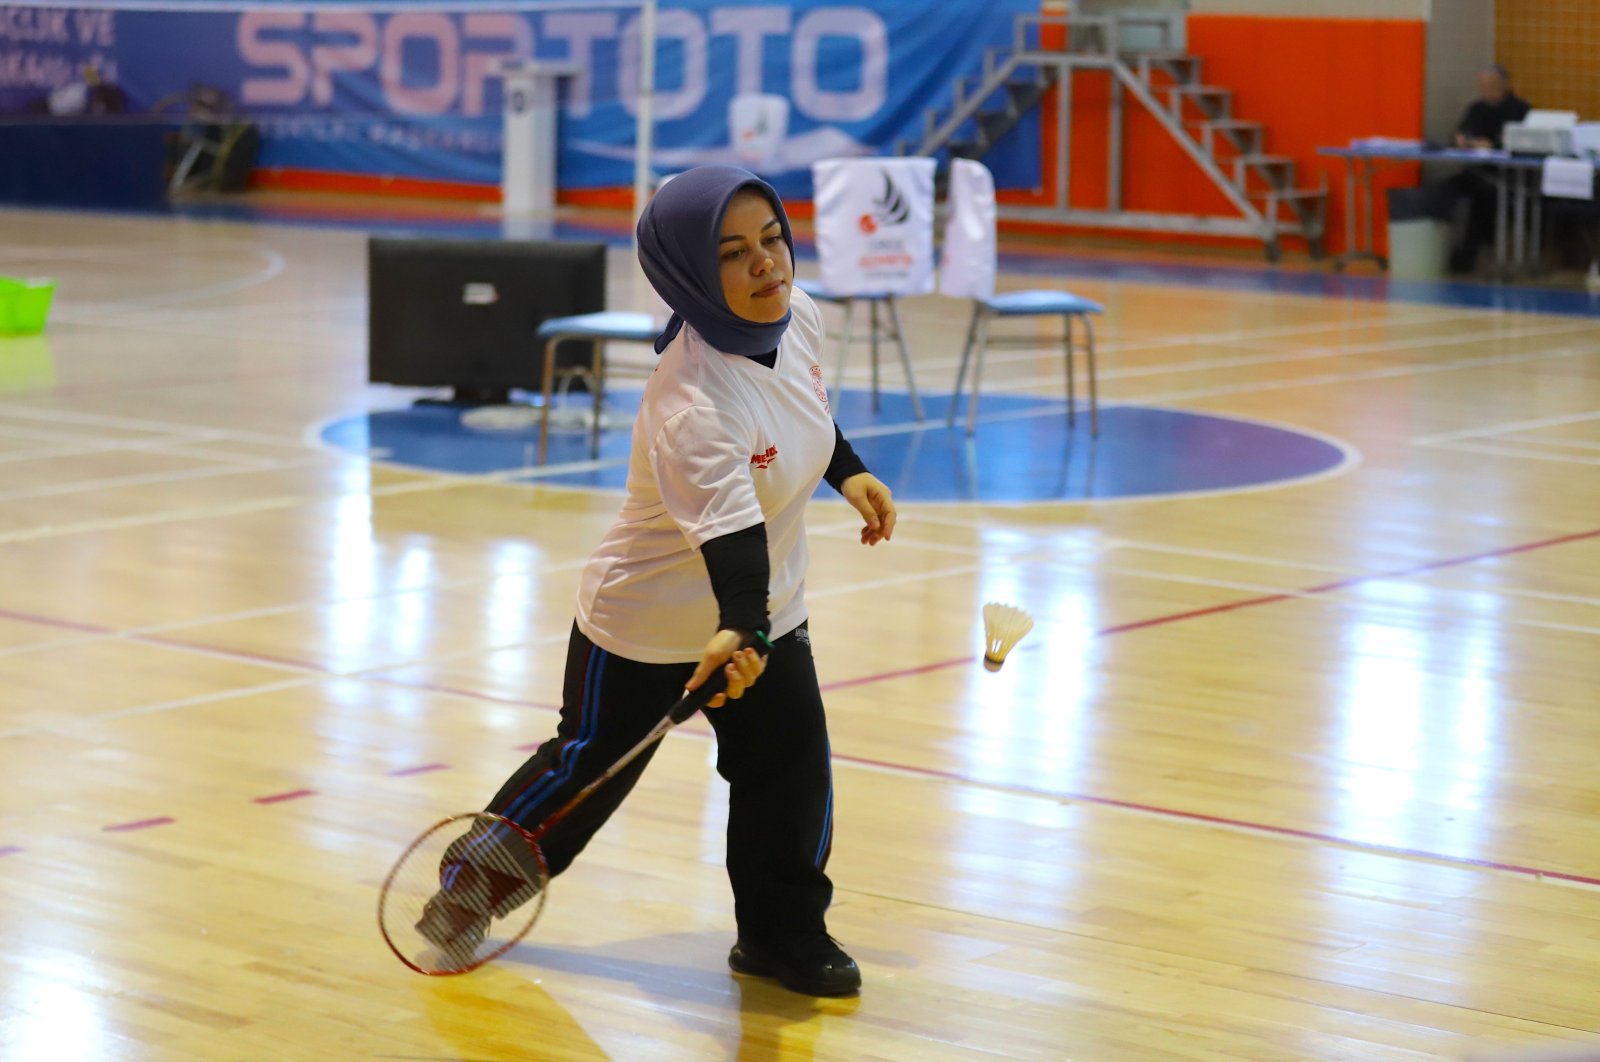 Türk büyük Çevik badmintonda parlamak için cüceliğe meydan okuyor